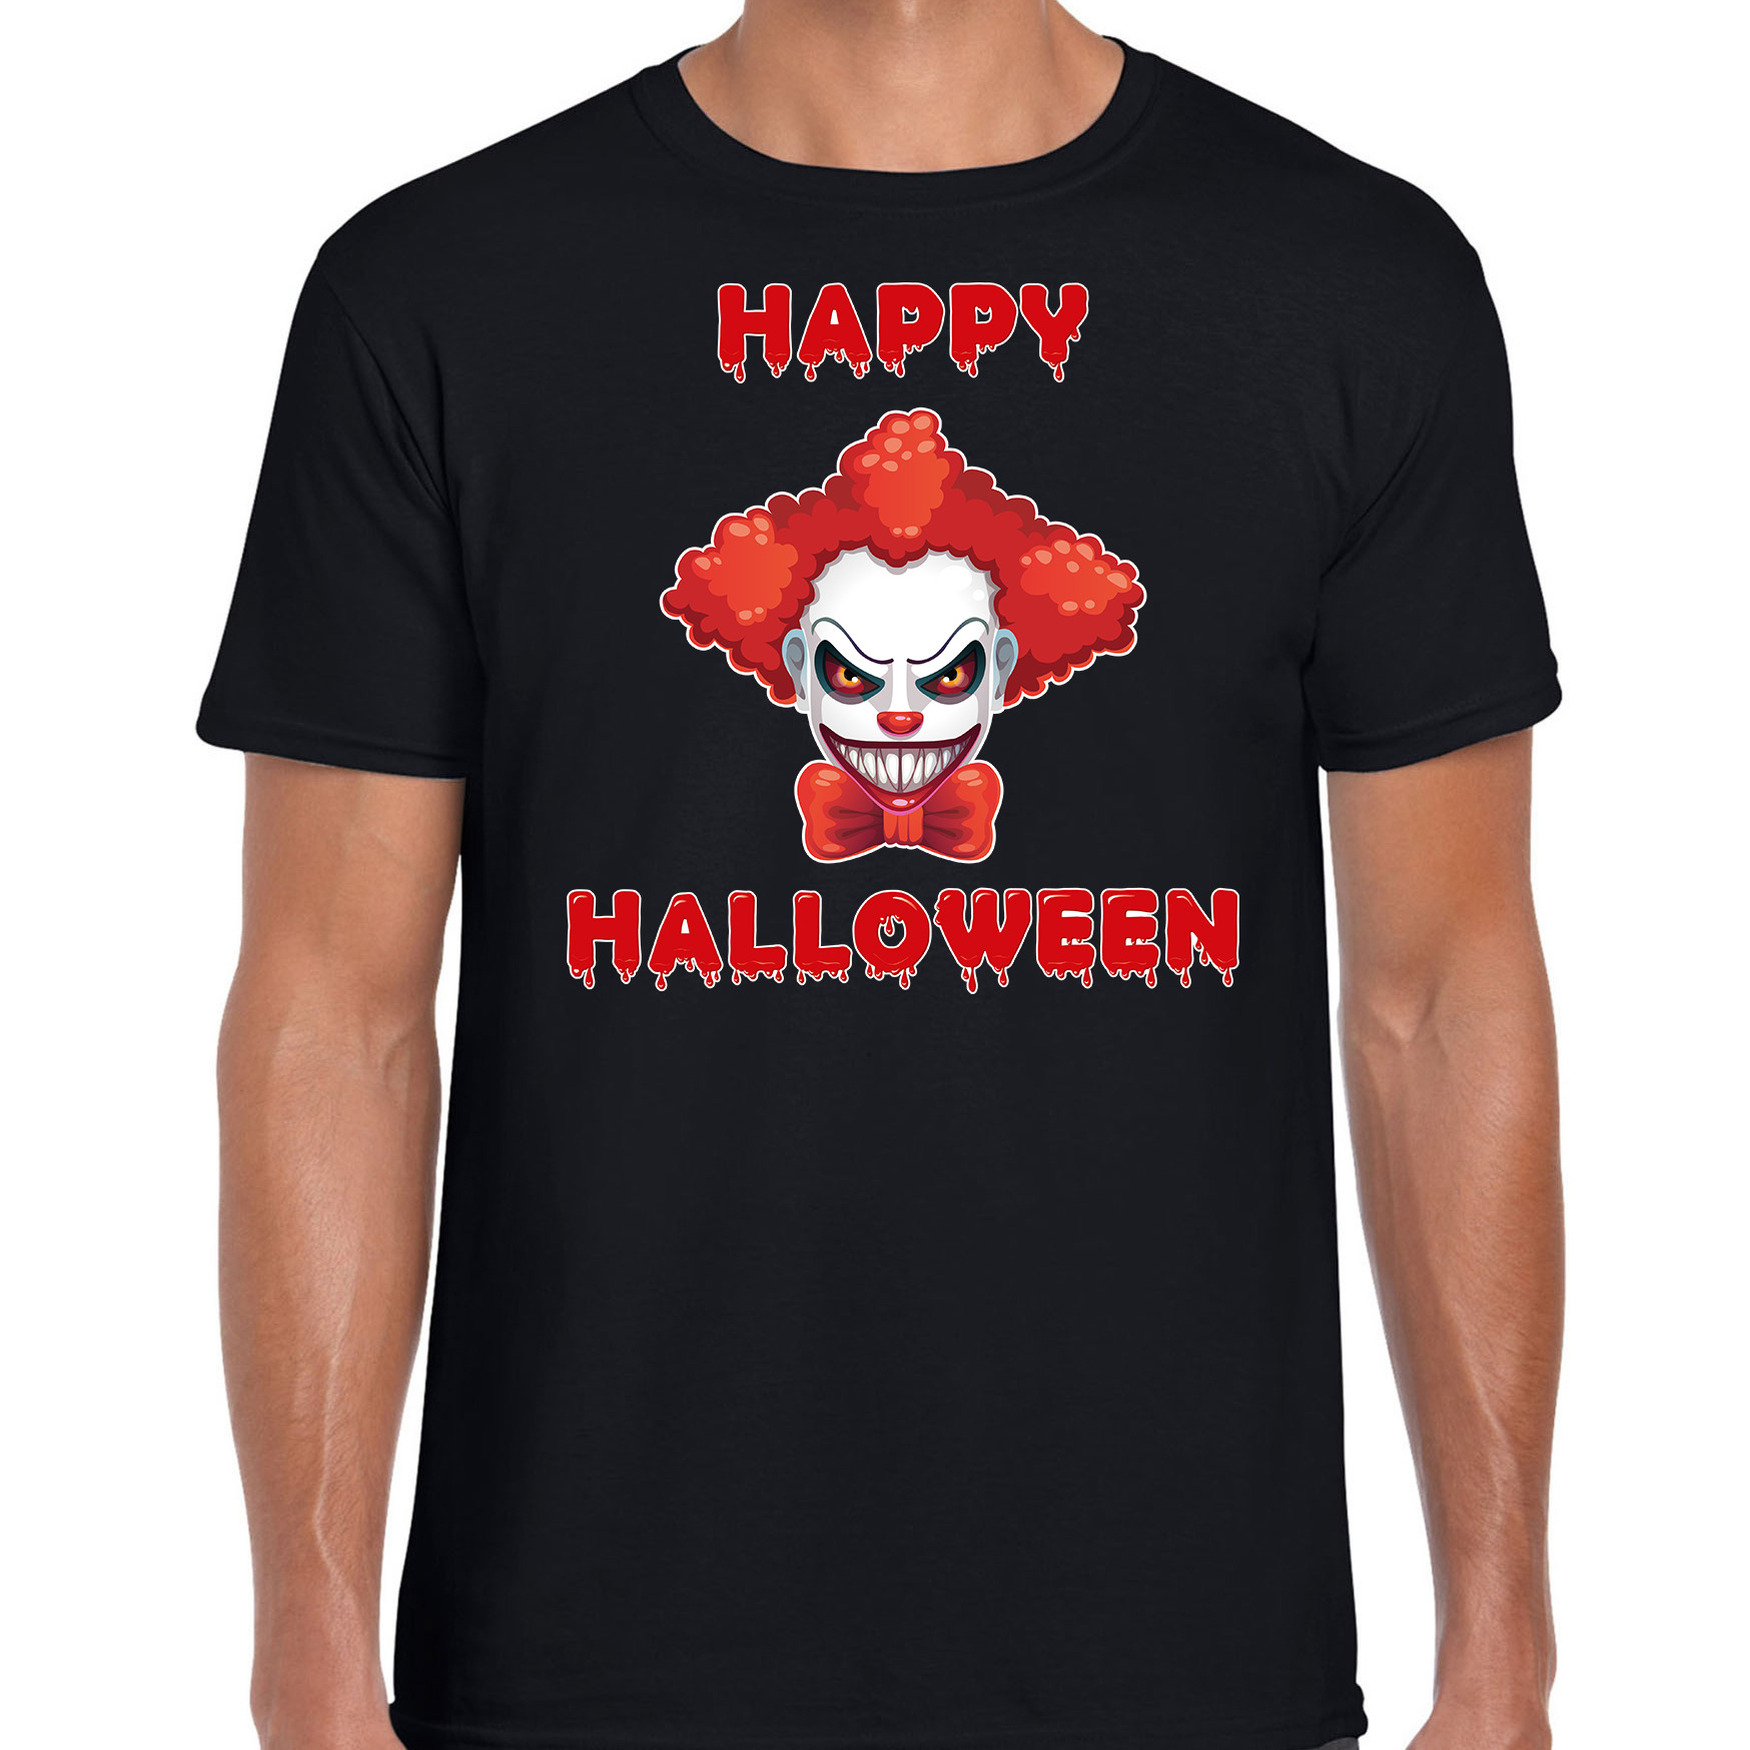 Happy Halloween rode horror clown verkleed t-shirt zwart voor heren